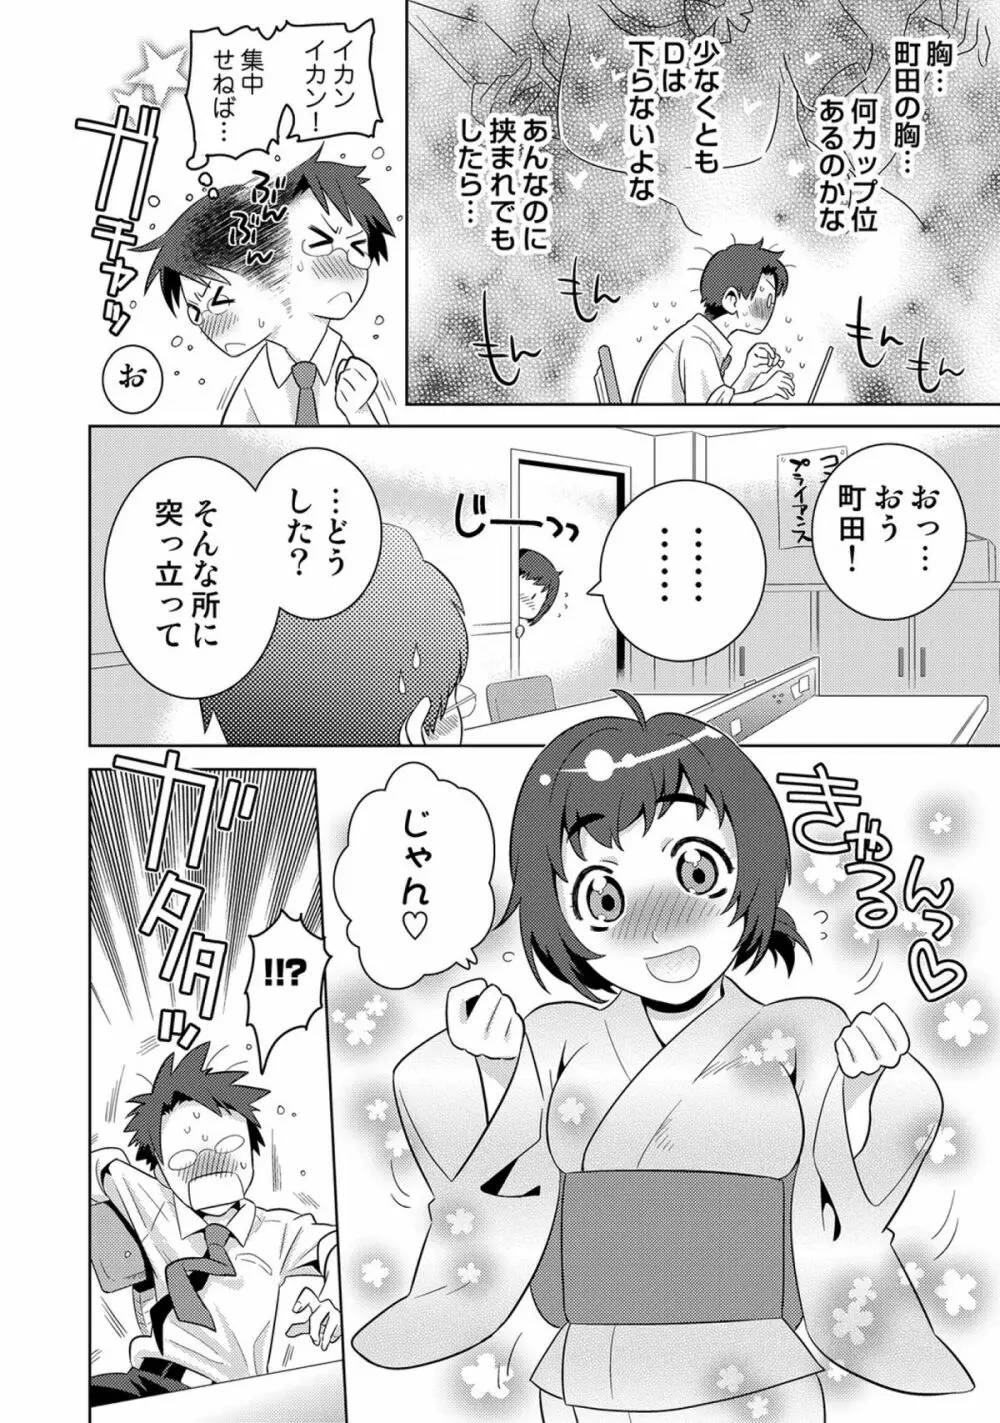 COMICしちゅぷれ vol.15 68ページ